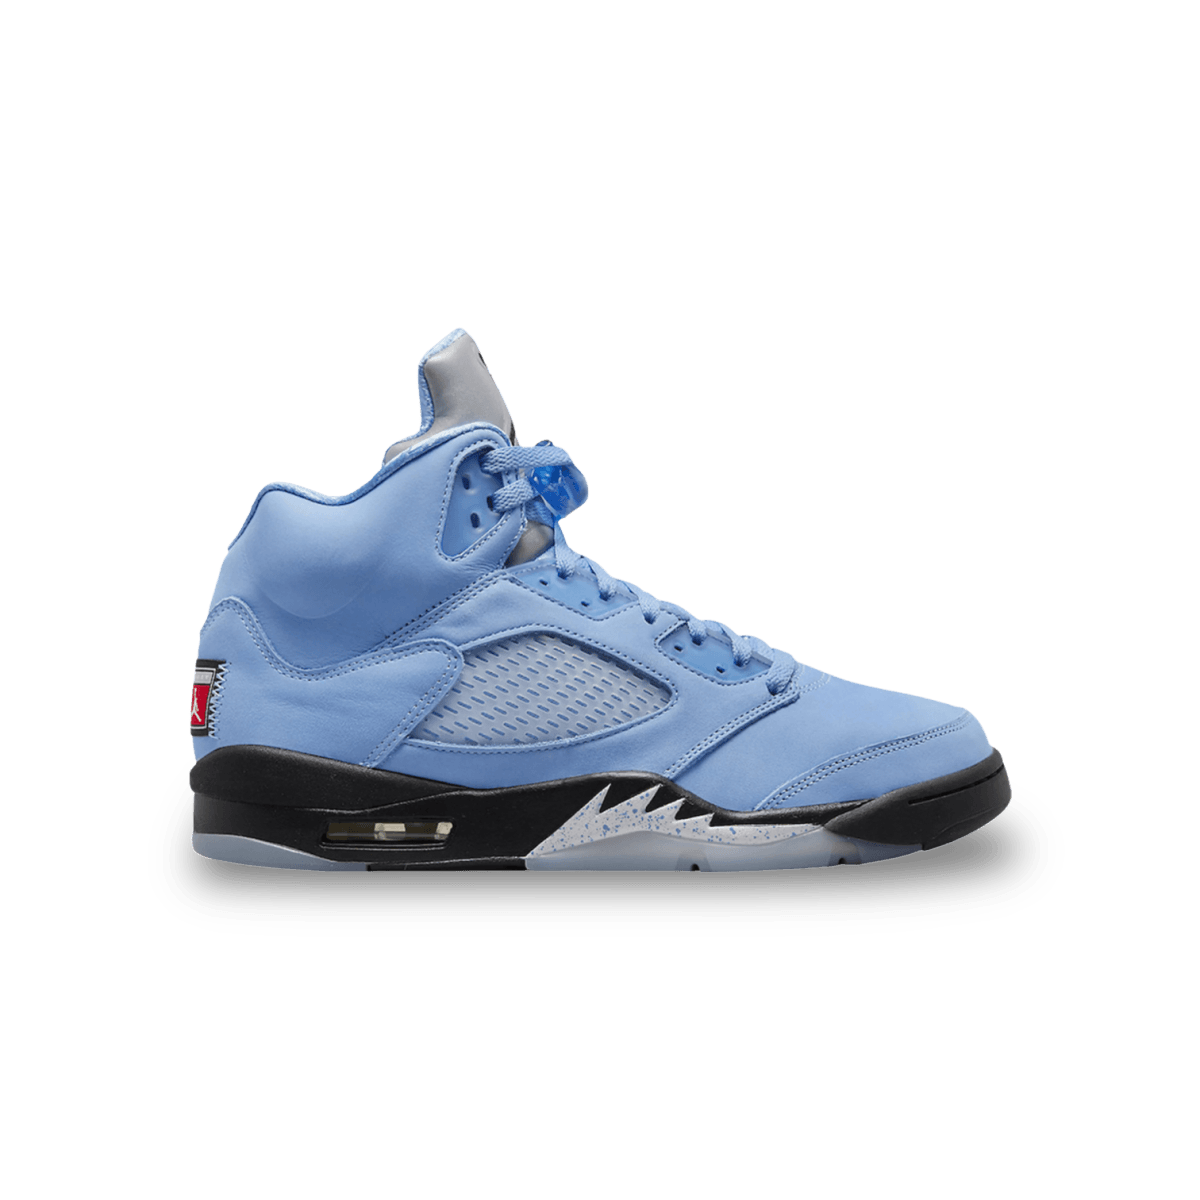 Air Jordan 5 Retro 'UNC' Blue - Mid Sneaker - Jawns on Fire Sneakers & Streetwear